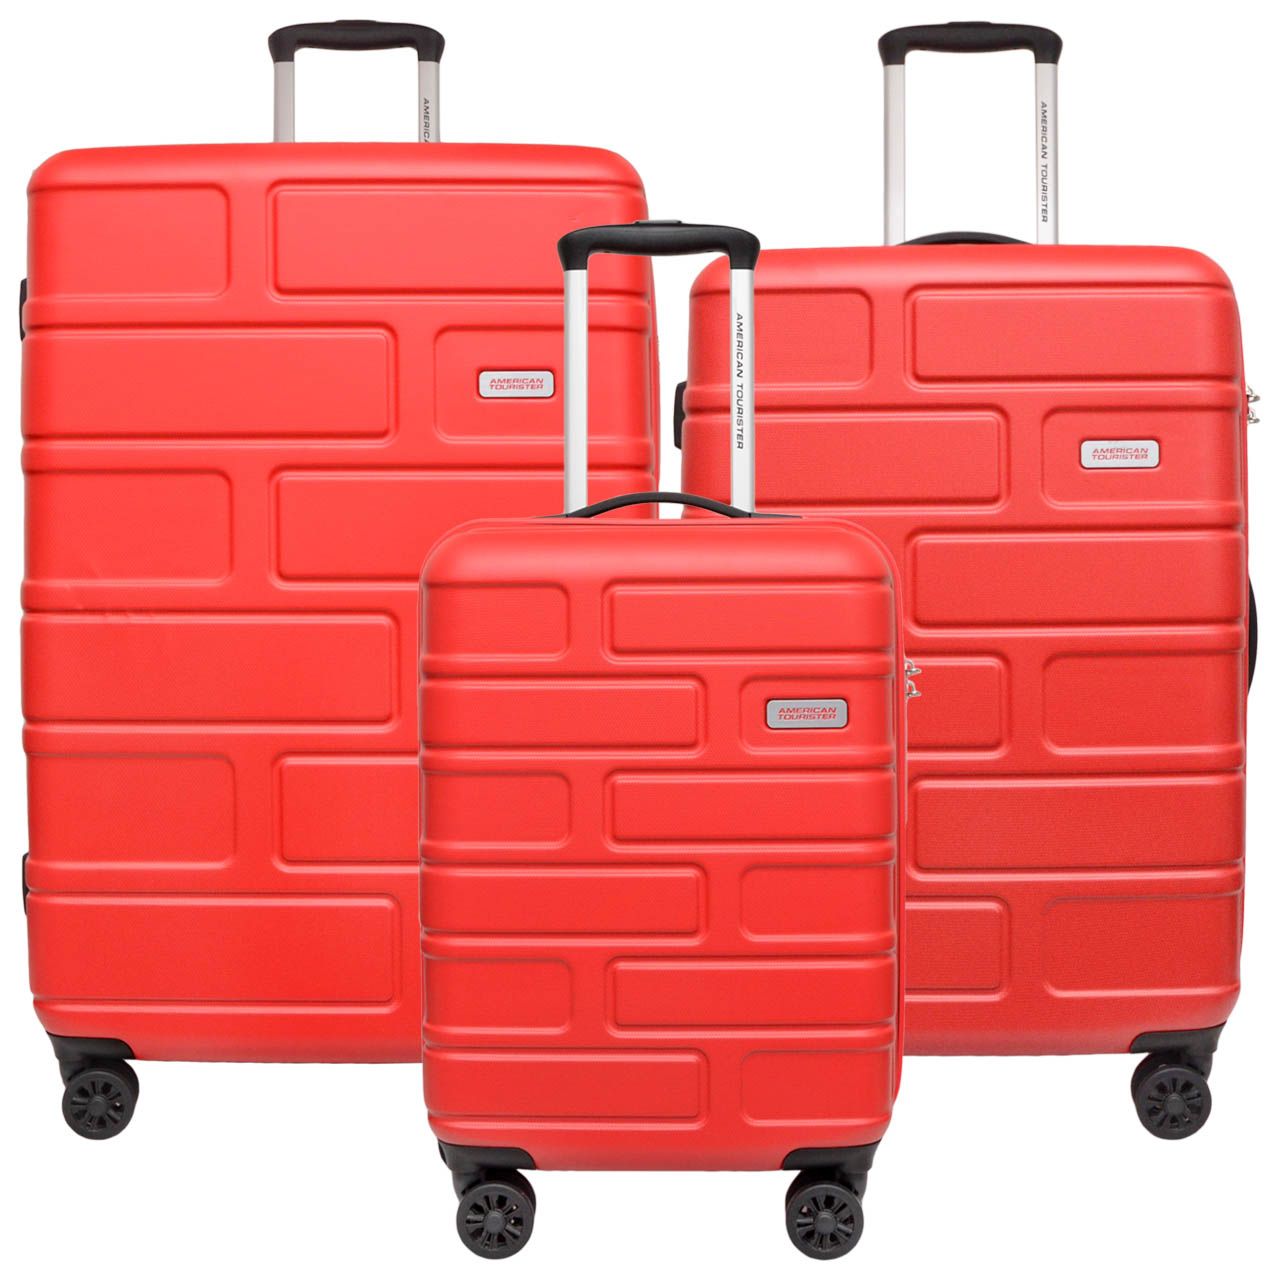 مجموعه سه عددی چمدان امریکن توریستر مدل BRICKLANE GE3 -  - 1